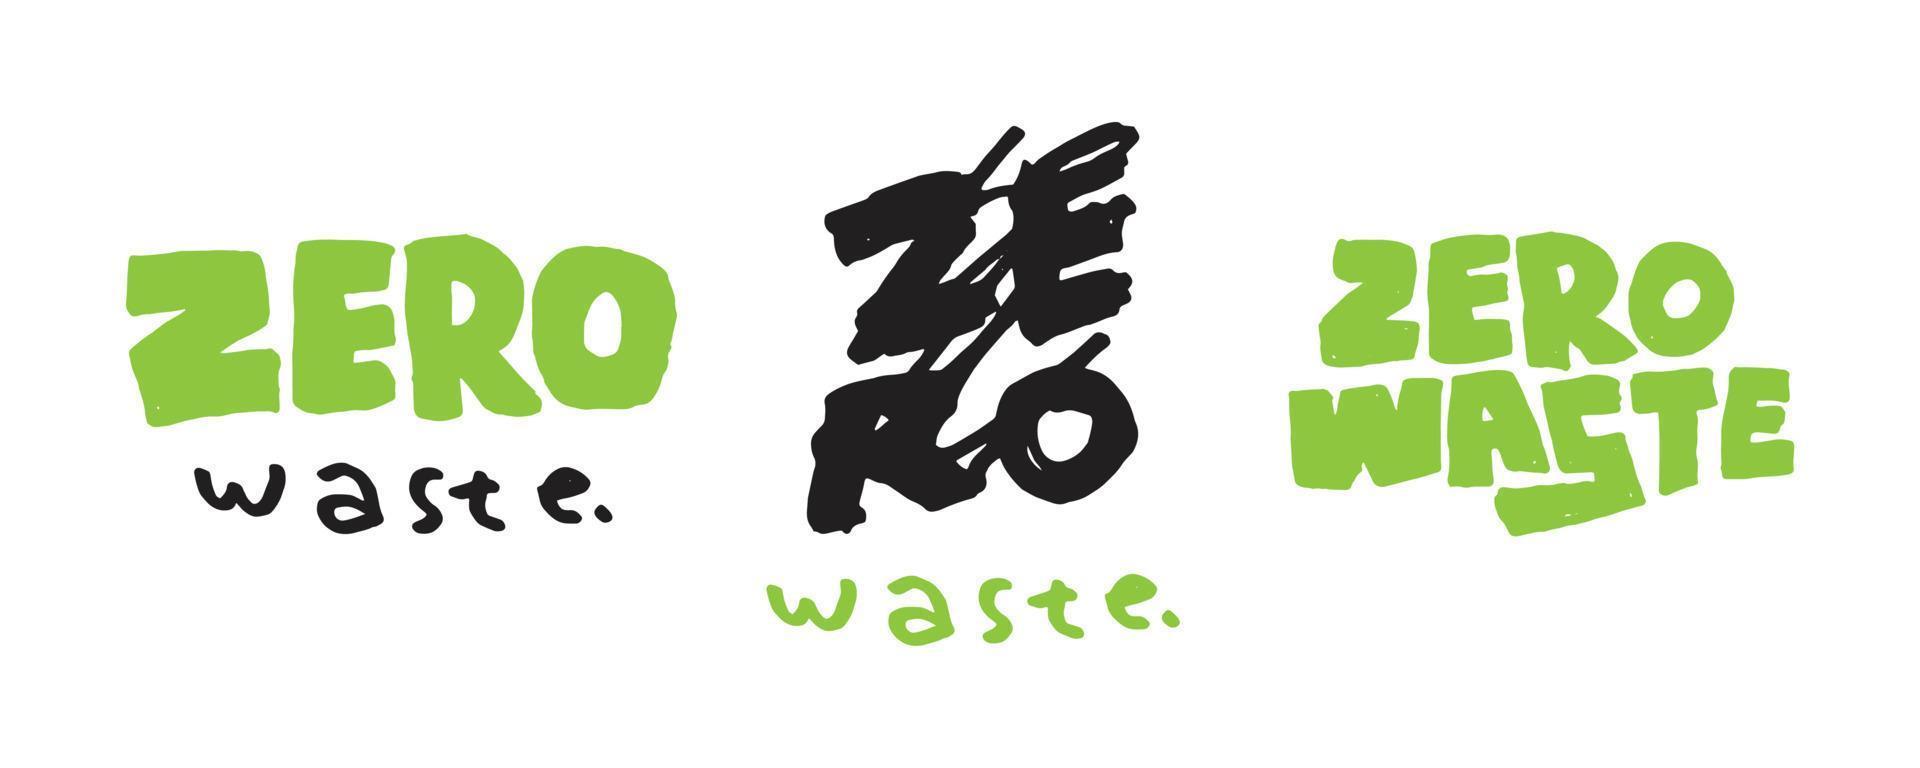 design de adesivo de desperdício zero. símbolo da prevenção da poluição e efeitos do aquecimento global vetor